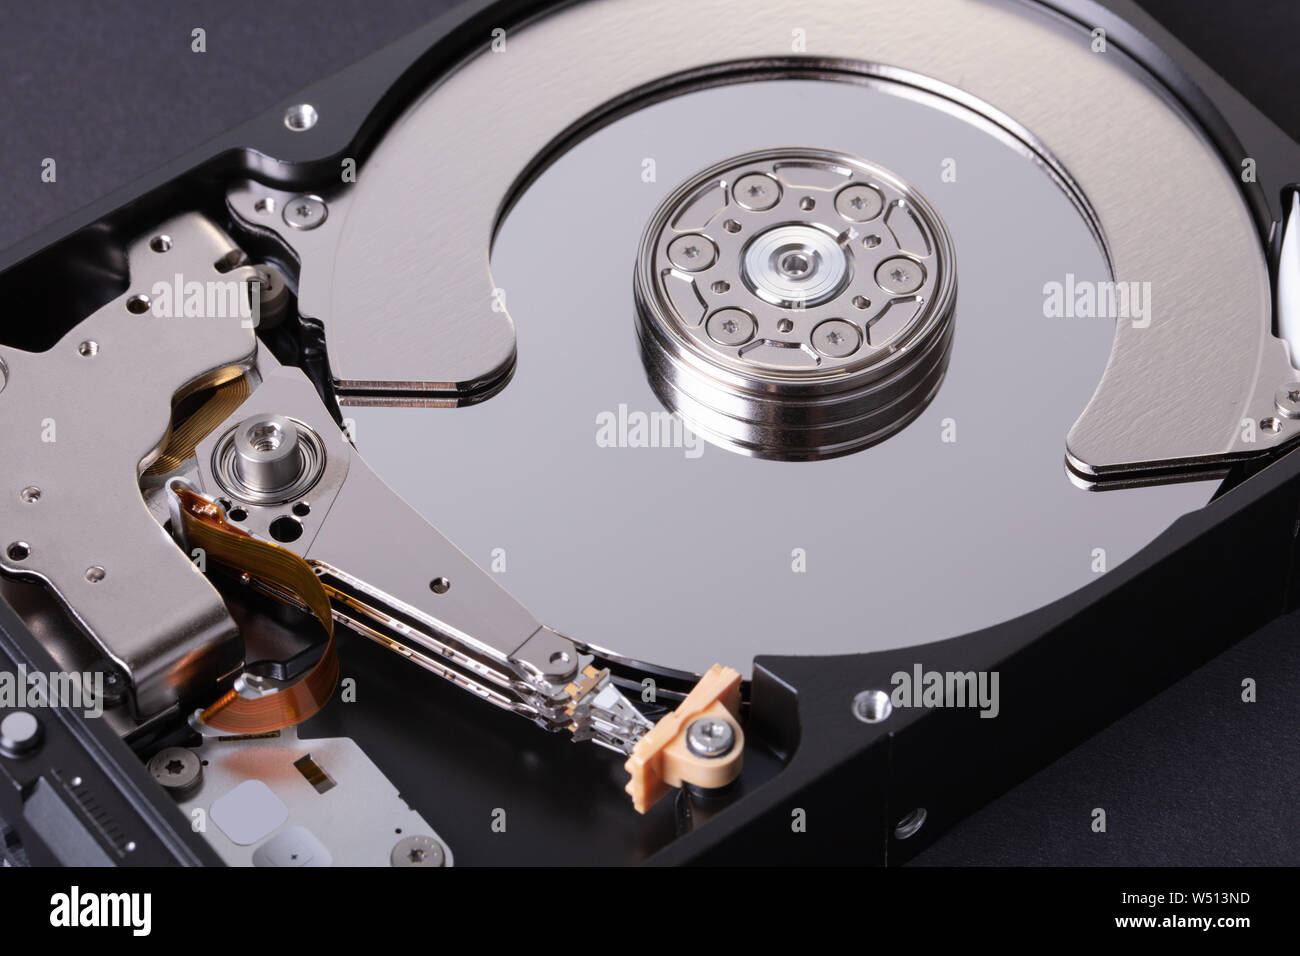 Desmonta el disco duro de un ordenador sobre fondo negro Foto de stock